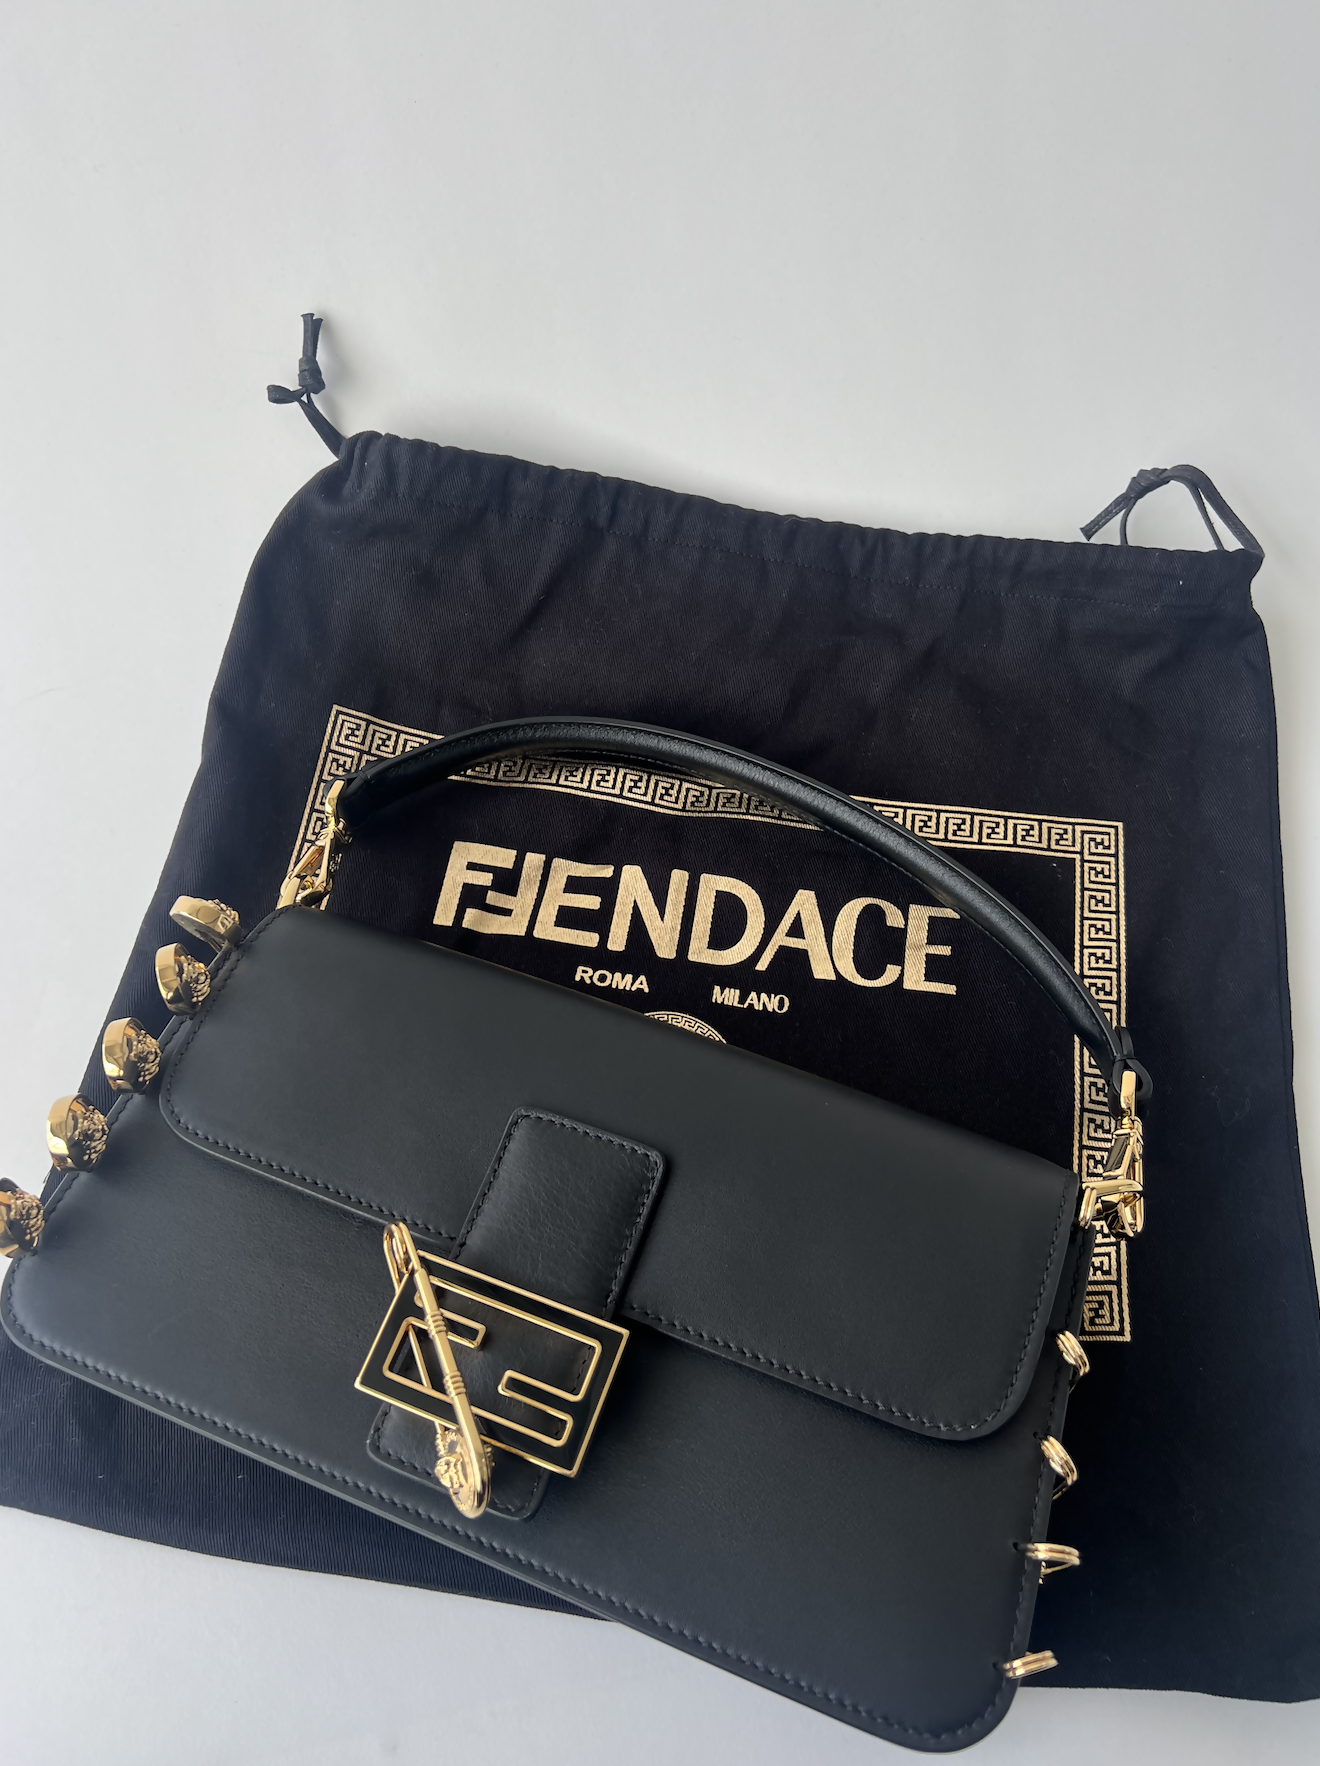 Fendace Fendi X Versace Baguette Leather Shoulder Macao